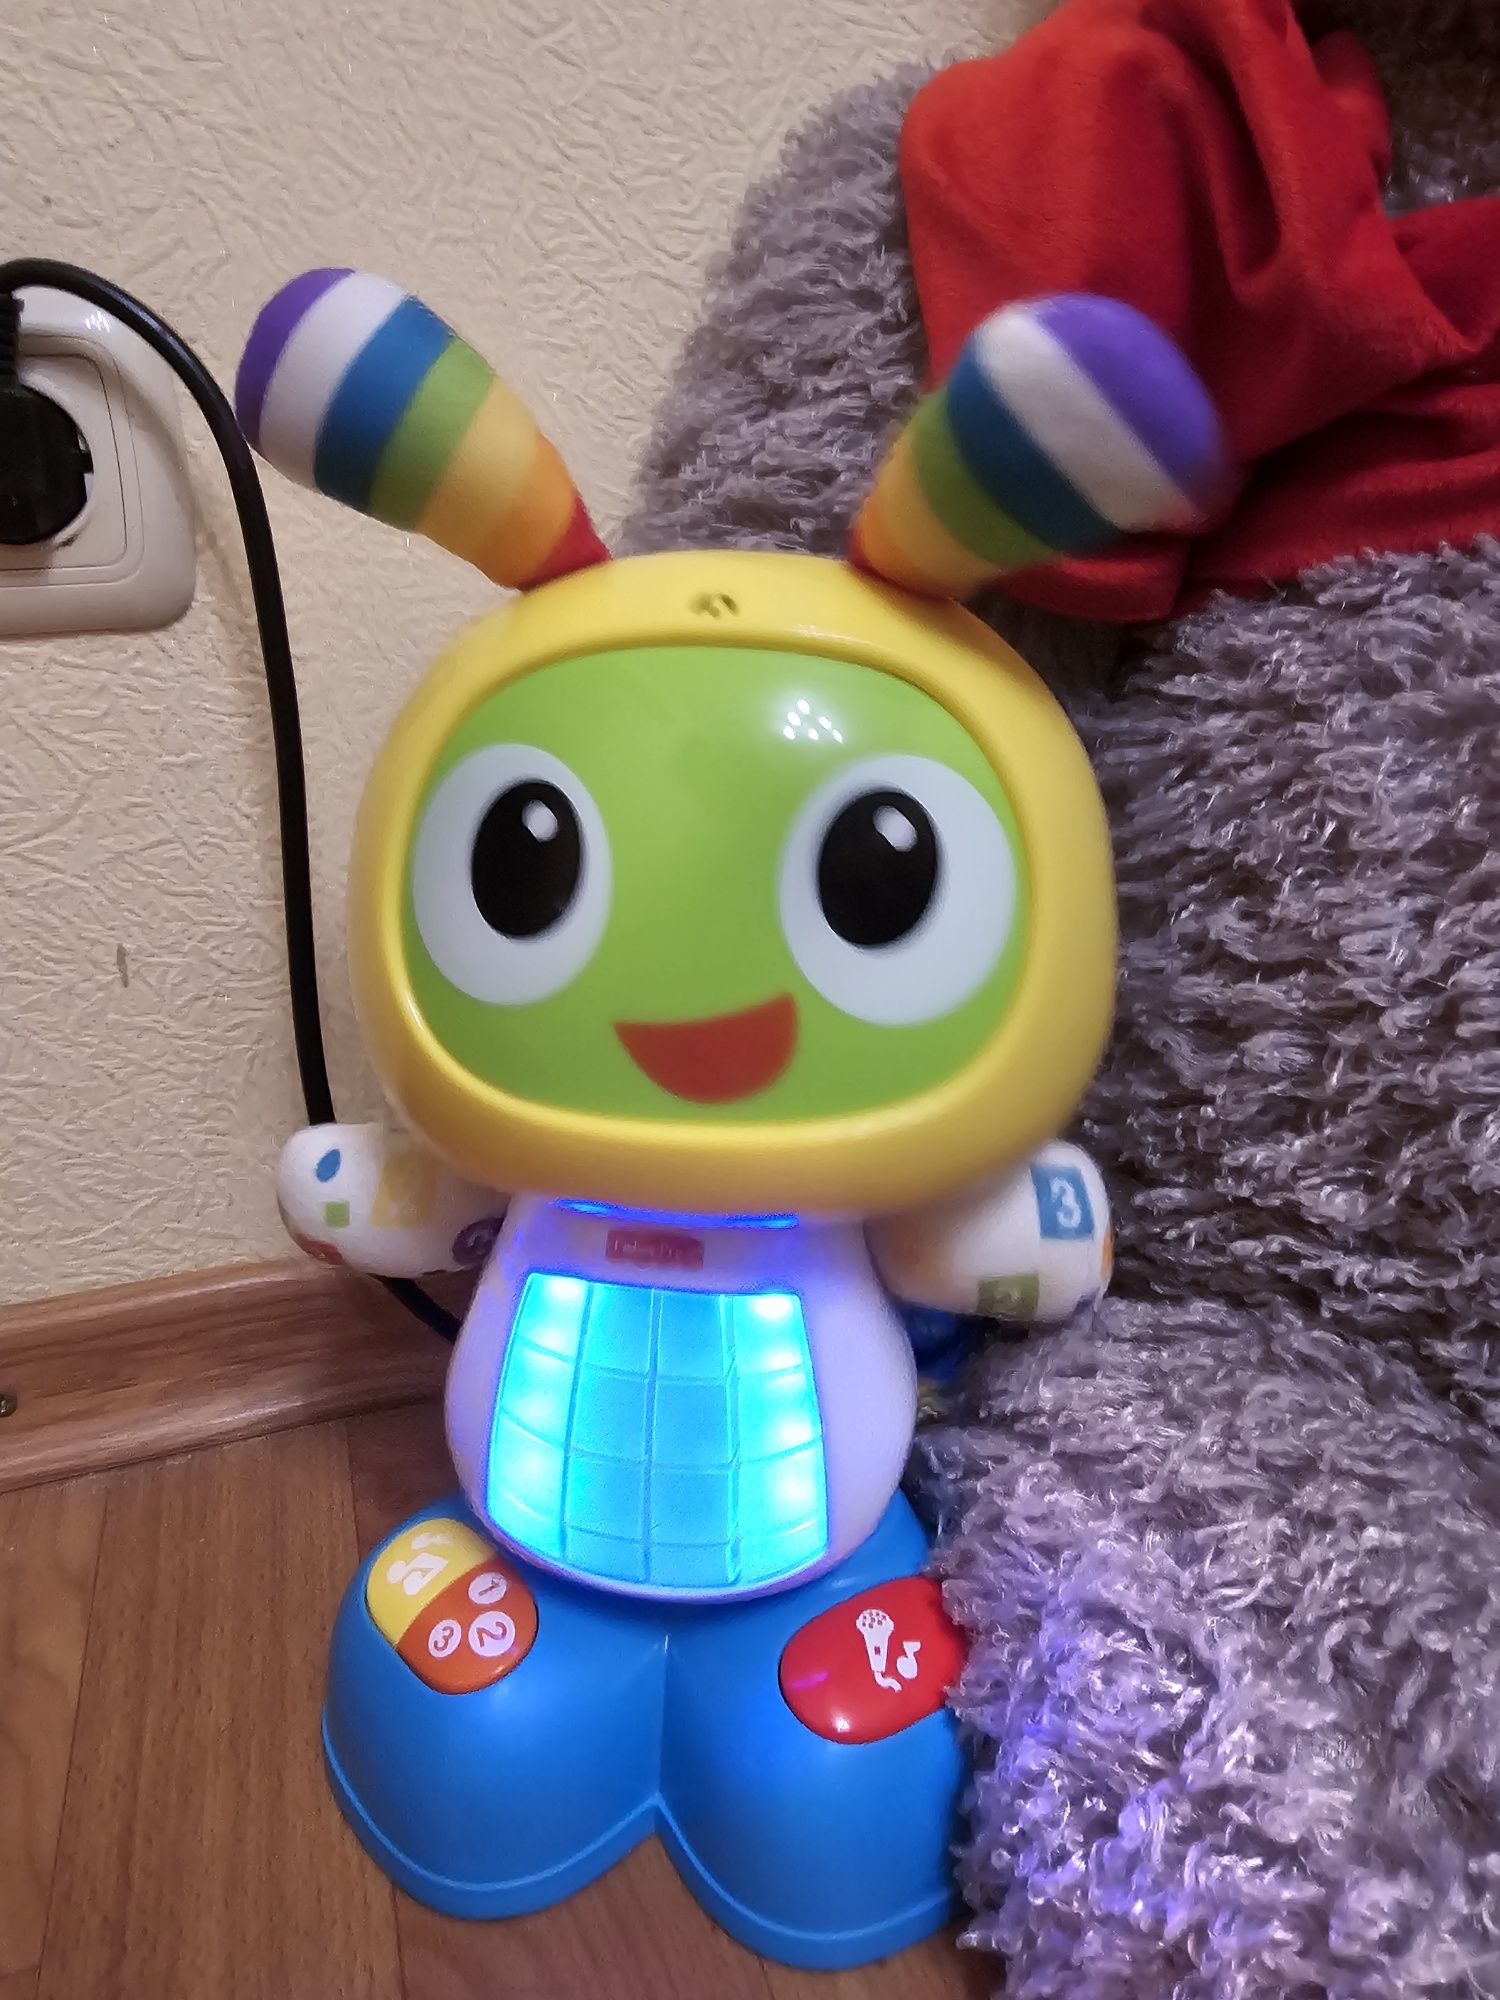 Інтерактивна іграшка Fisher-Price Робот Бібо російською

Джерело: http